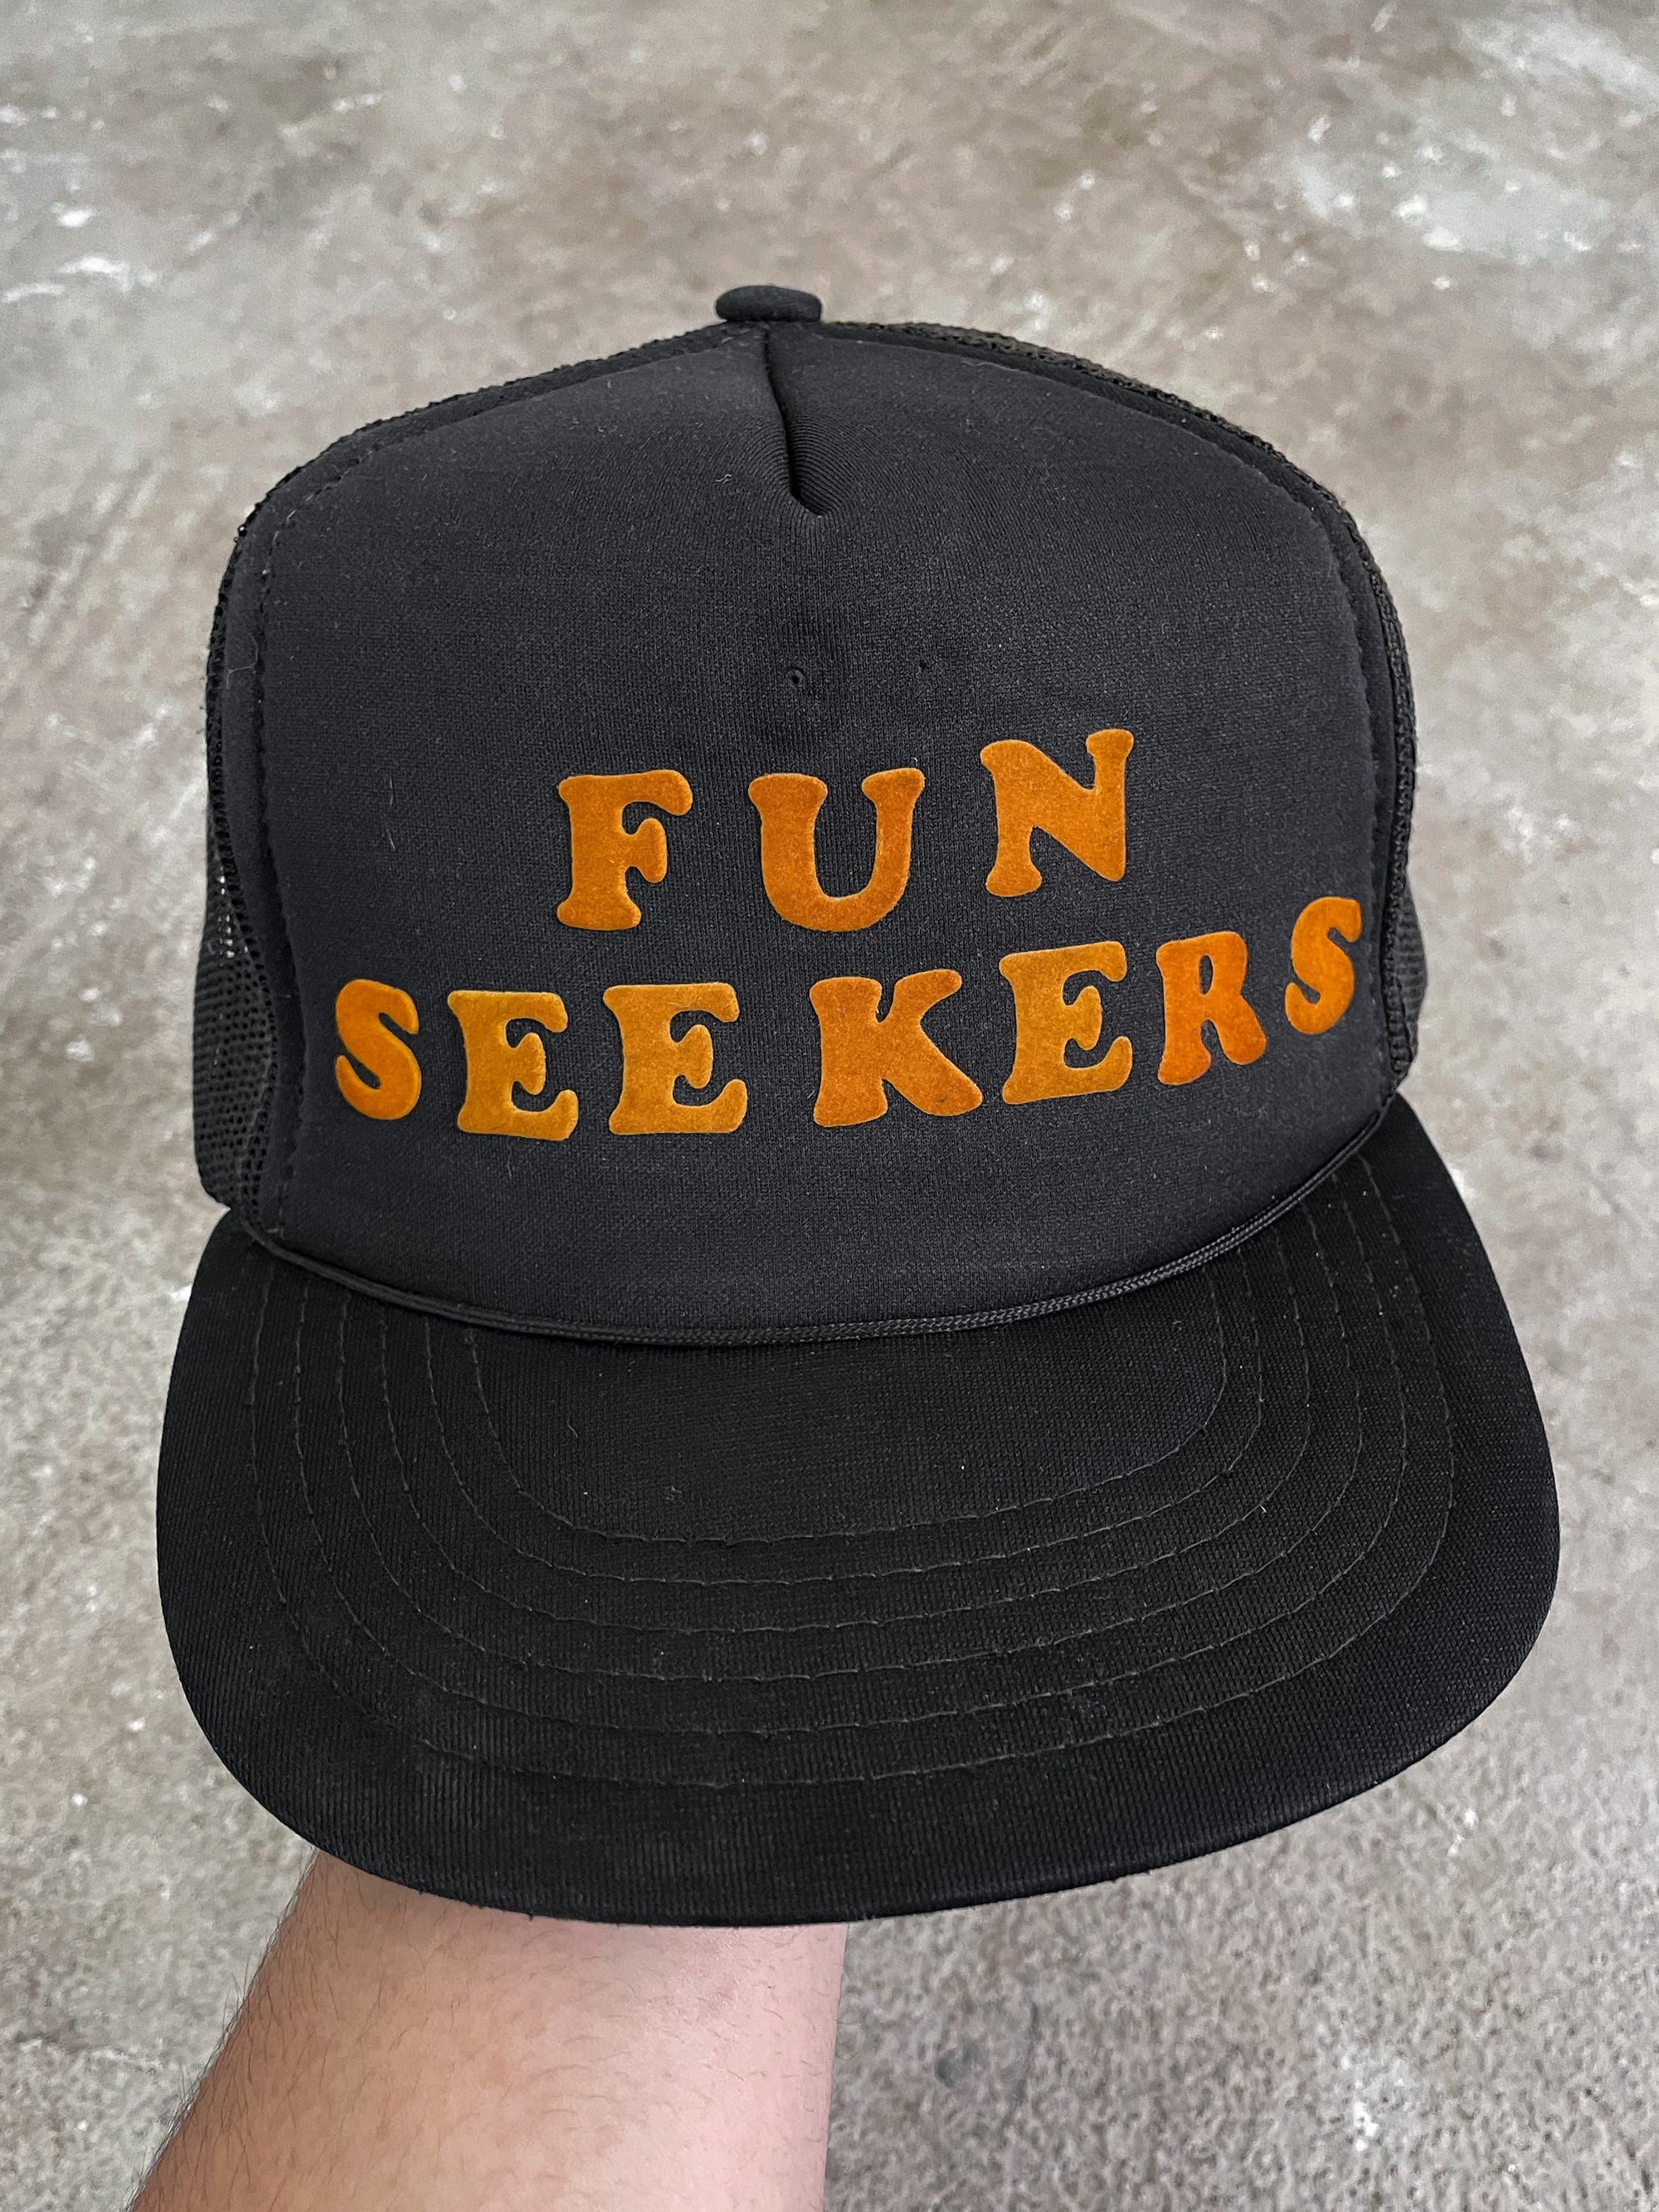 1980s “Fun Seekers” Trucker Hat